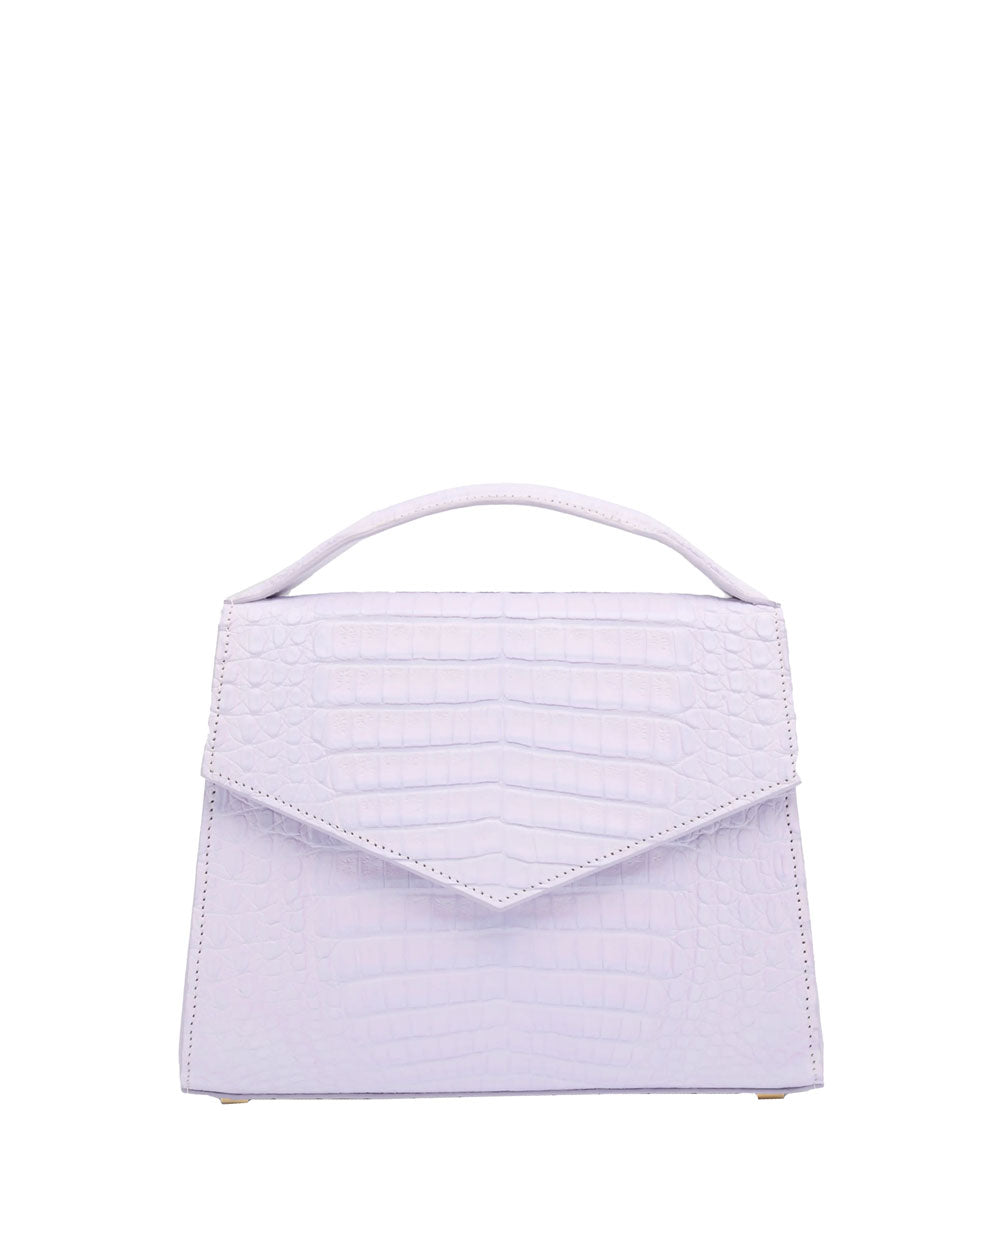 Medium Julia Top Handle Bag in Lavender